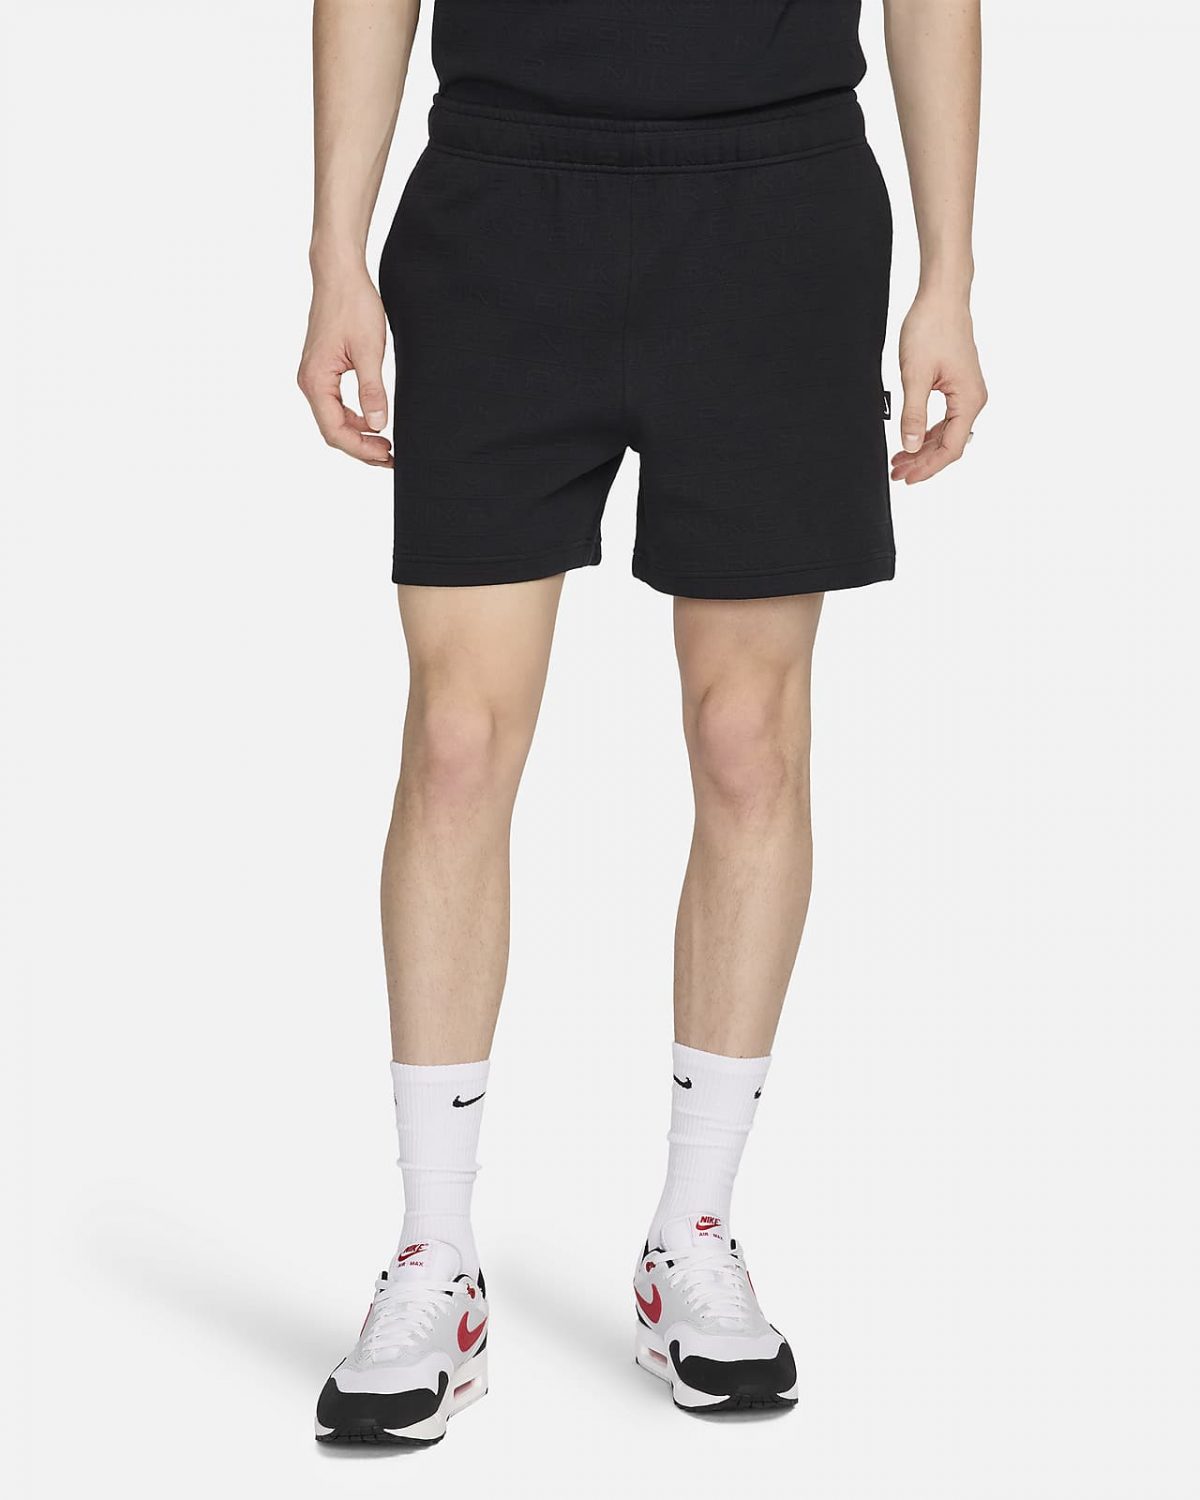 Мужские шорты Nike Sportswear Air фото